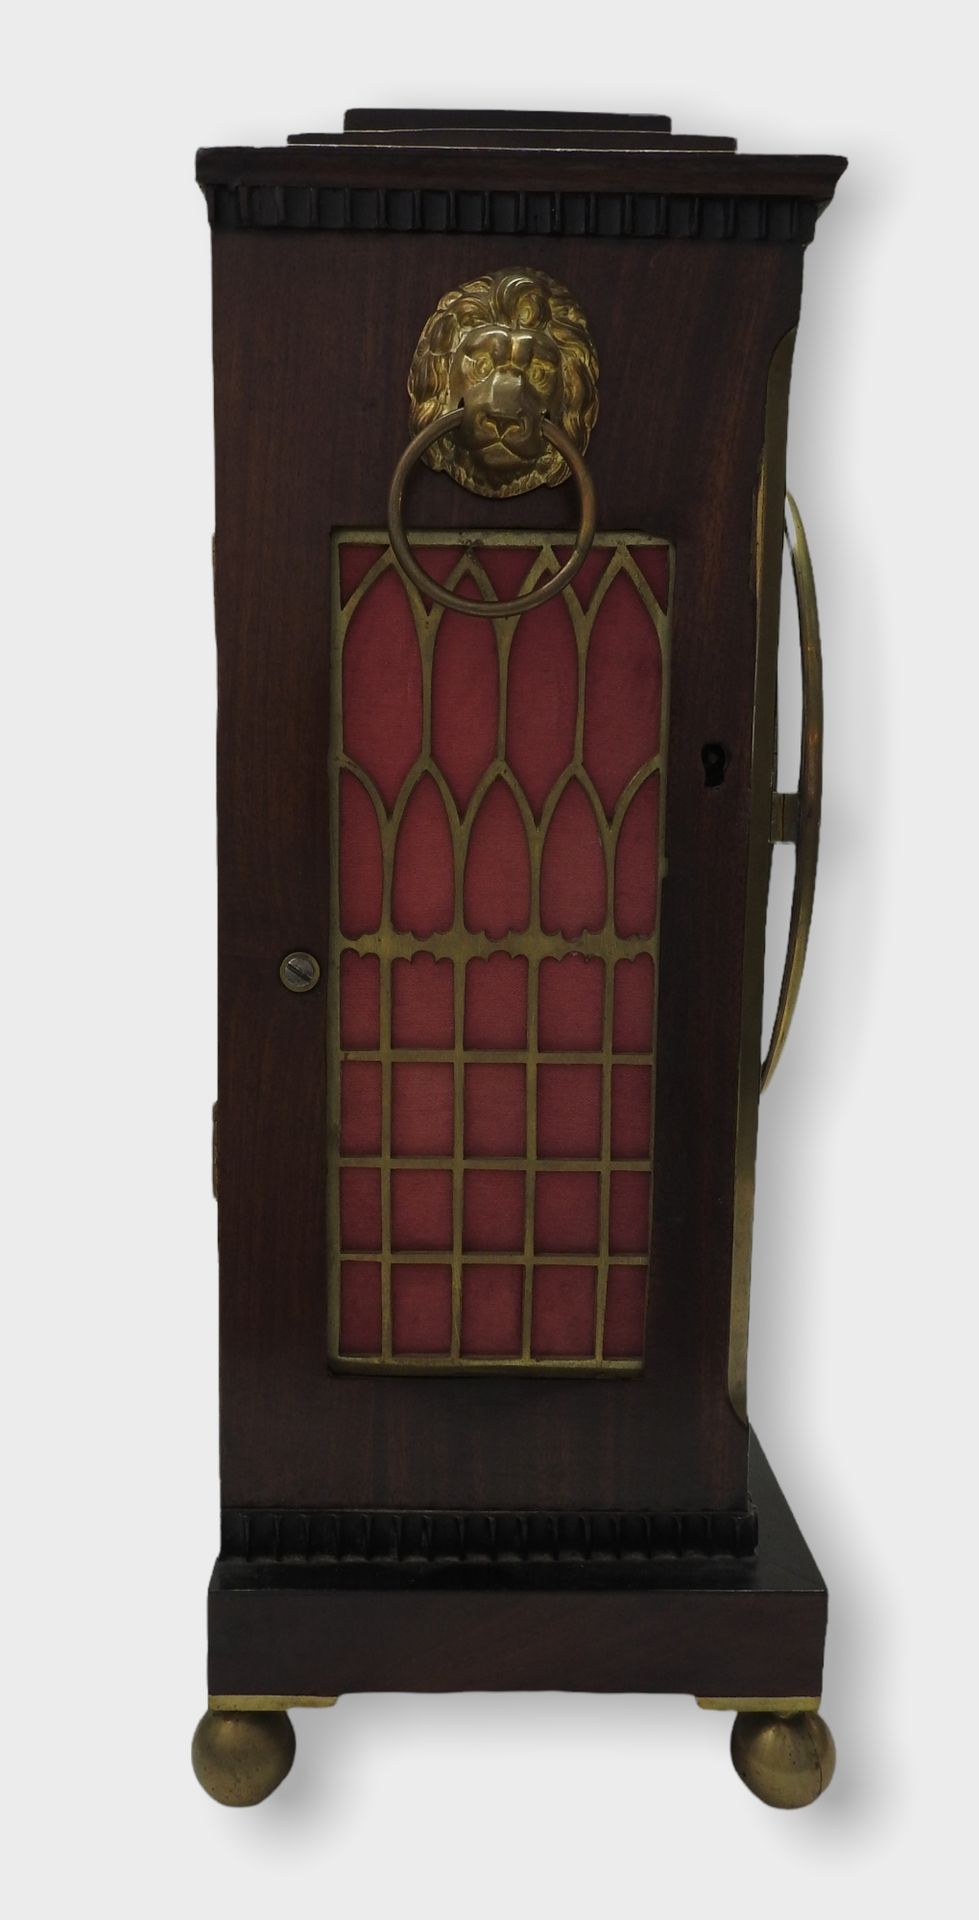 Englische Konsolenuhr, Bracket clock - Bild 4 aus 14